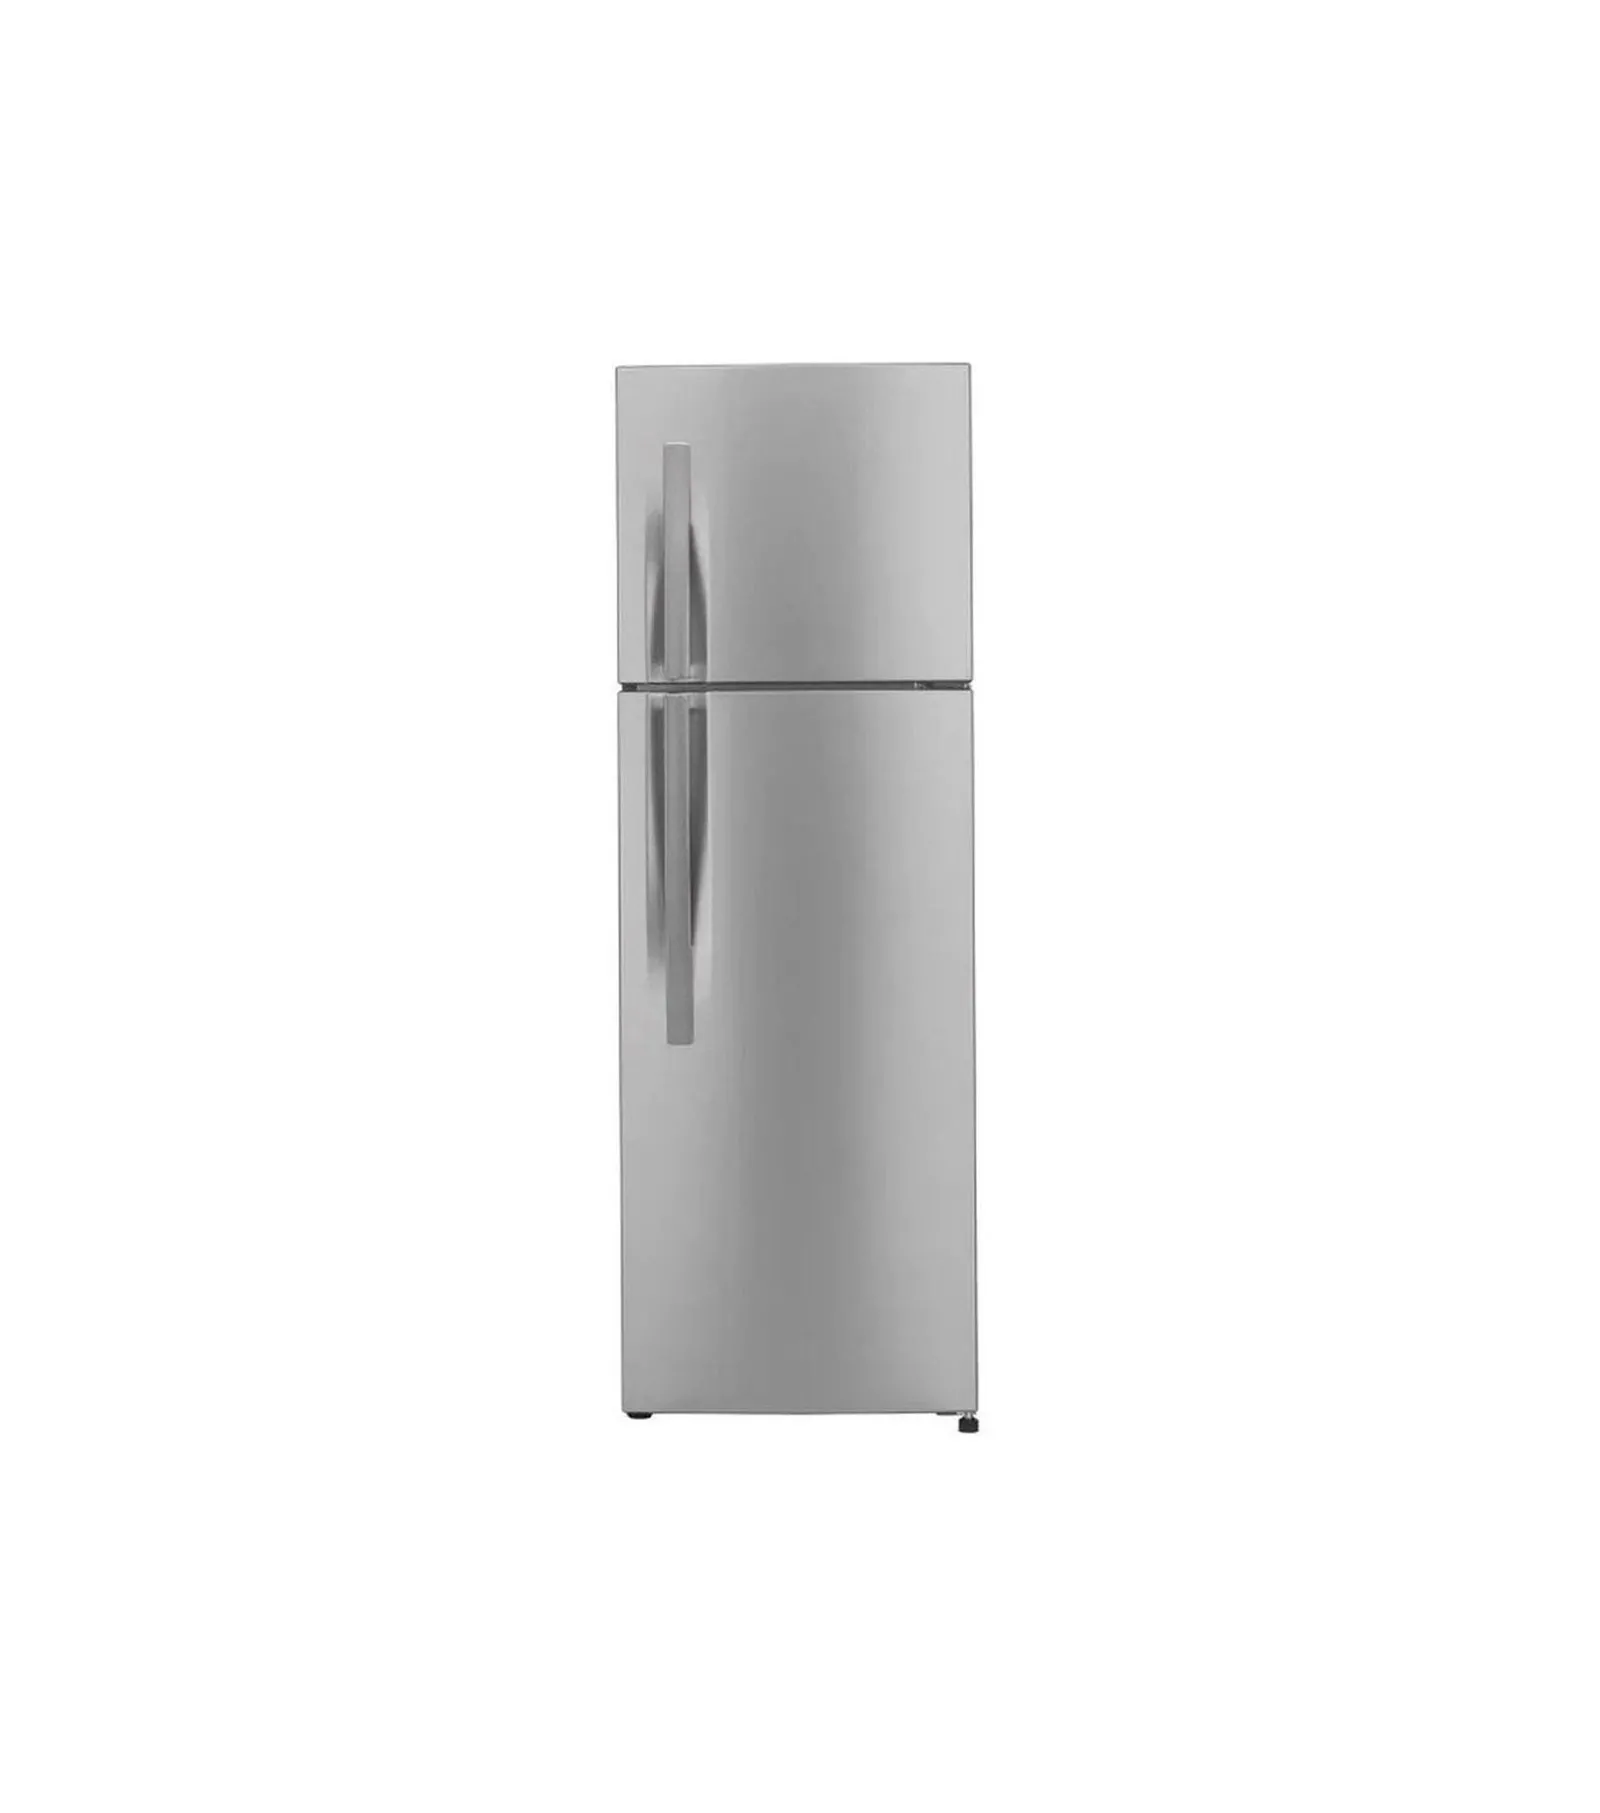 LG 372 Liter Refrigerator Inverter Compressor Color Silver Model GLG372RLBB International Version.